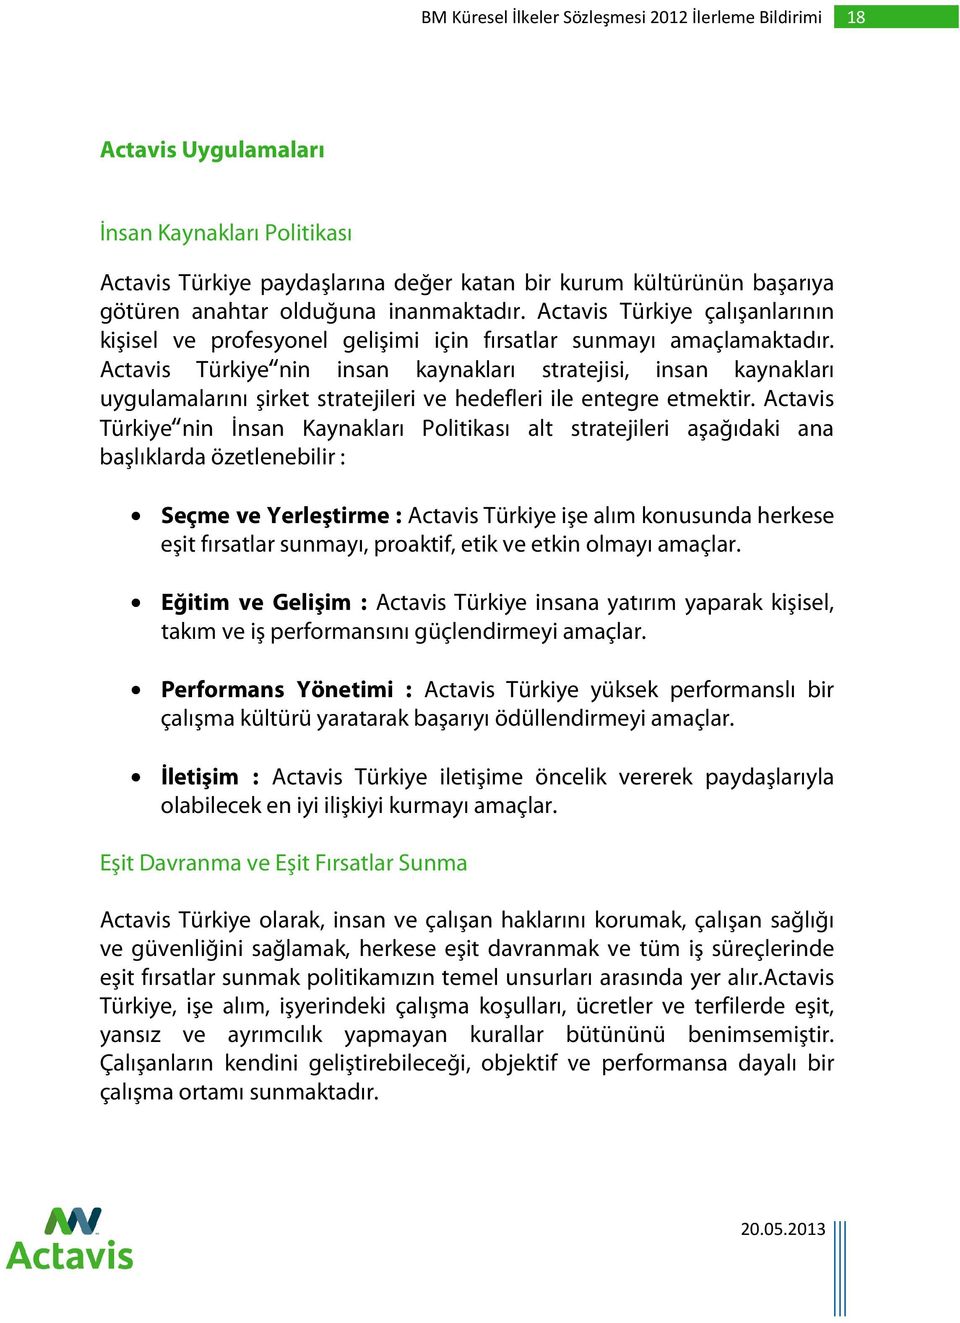 Actavis Türkiye nin insan kaynakları stratejisi, insan kaynakları uygulamalarını şirket stratejileri ve hedefleri ile entegre etmektir.